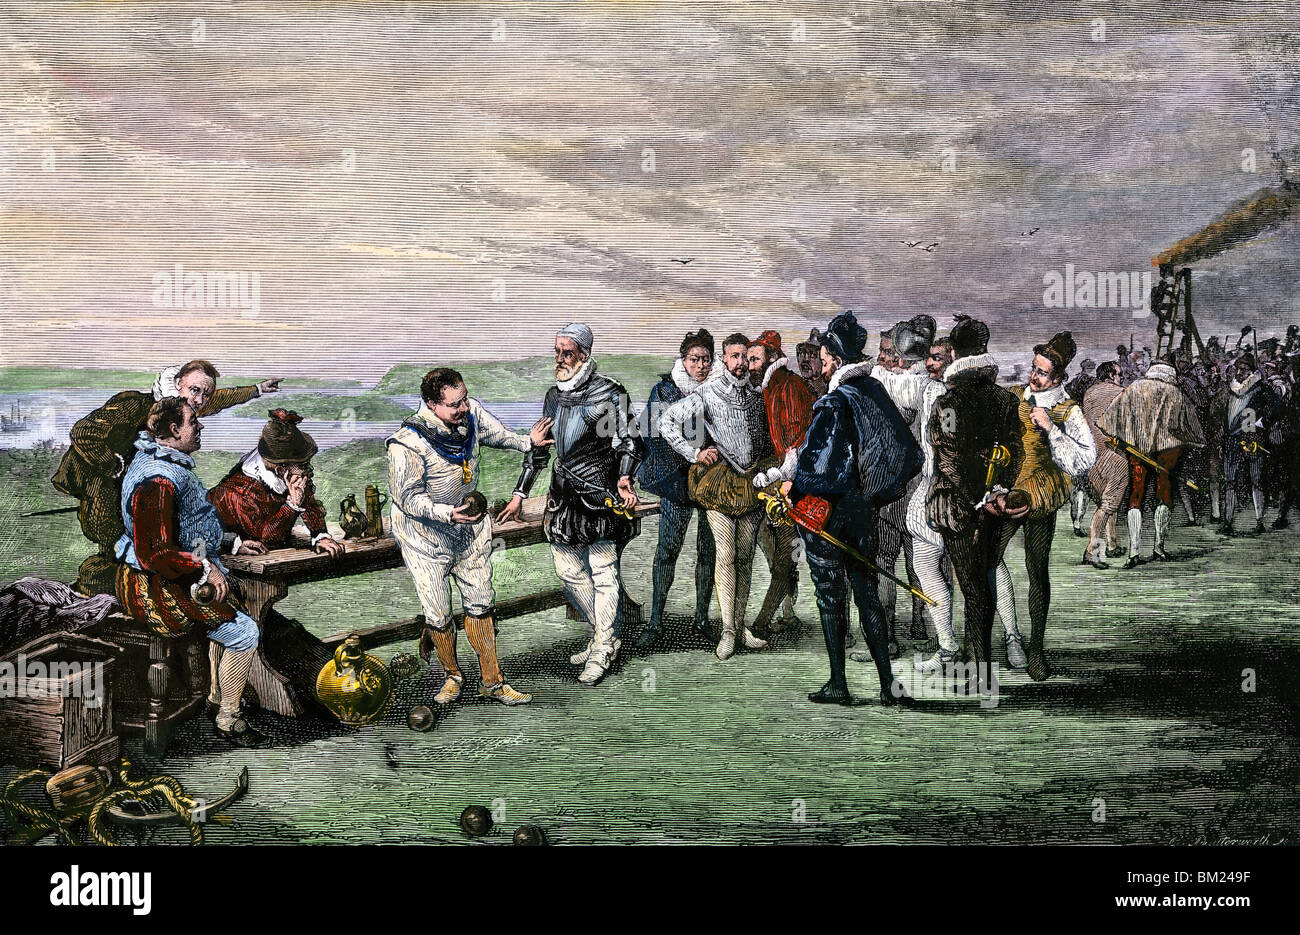 Les officiers de marine anglais jouant un jeu de boules avant d'attaquer l'Armada espagnole, 1588. À la main, gravure sur bois Banque D'Images